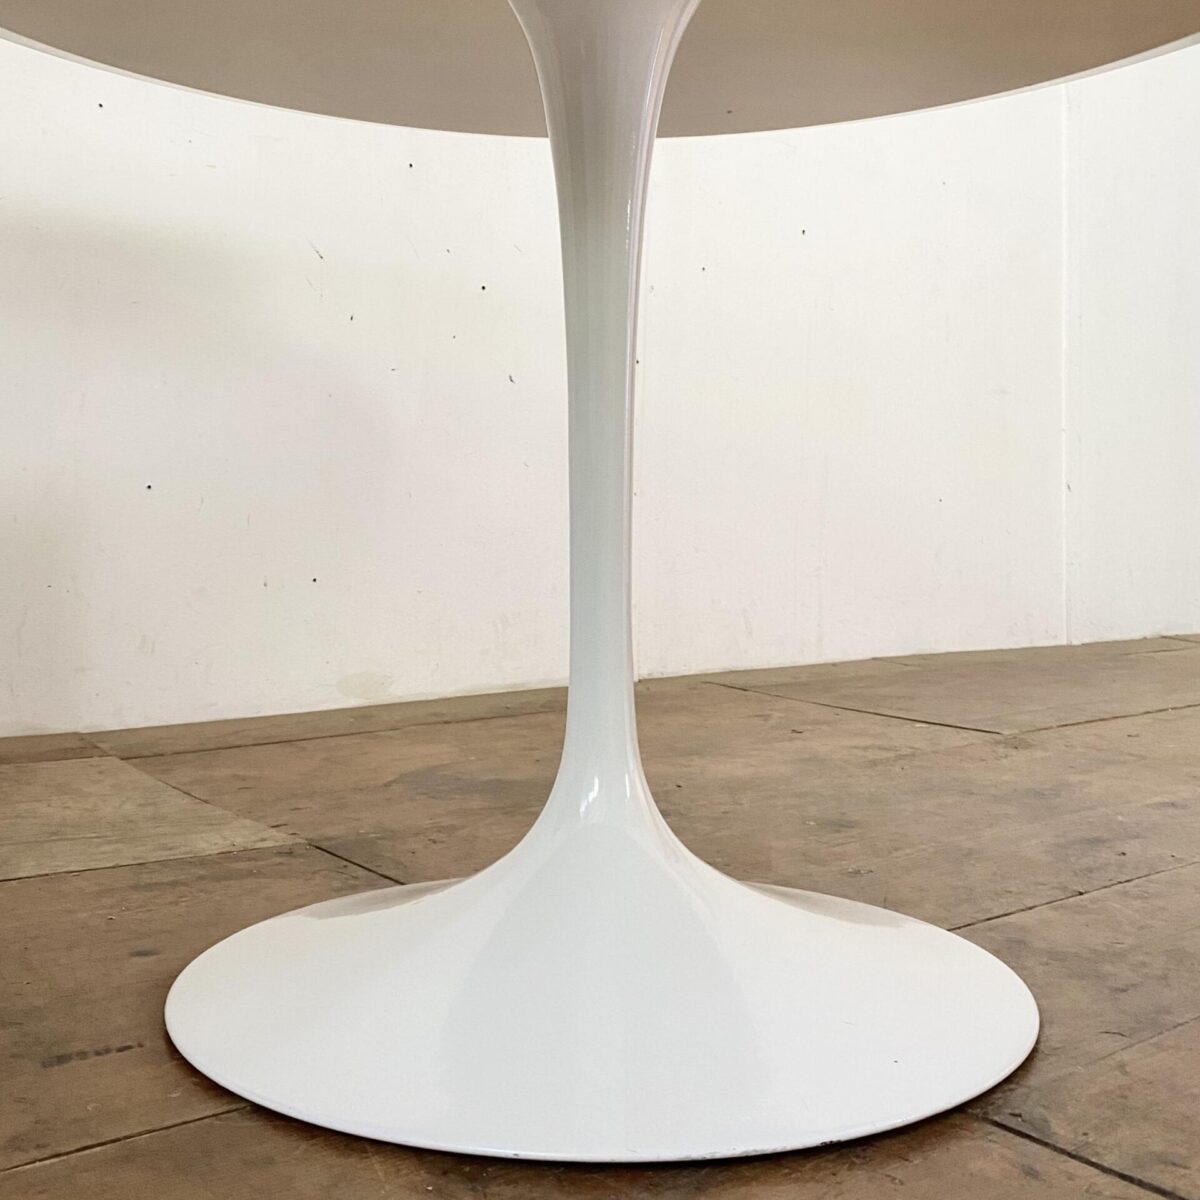 Runder Tulpenfuss Tisch von Eero Sarinnen. Entwurf aus den 50er Jahren, hergestellt von Knoll International. Durchmesser 120cm Höhe 70.5cm. Das Tischblatt ist mit weissem Kunstharz beschichtet, die abgeflachte Tischkante ist lackiert.